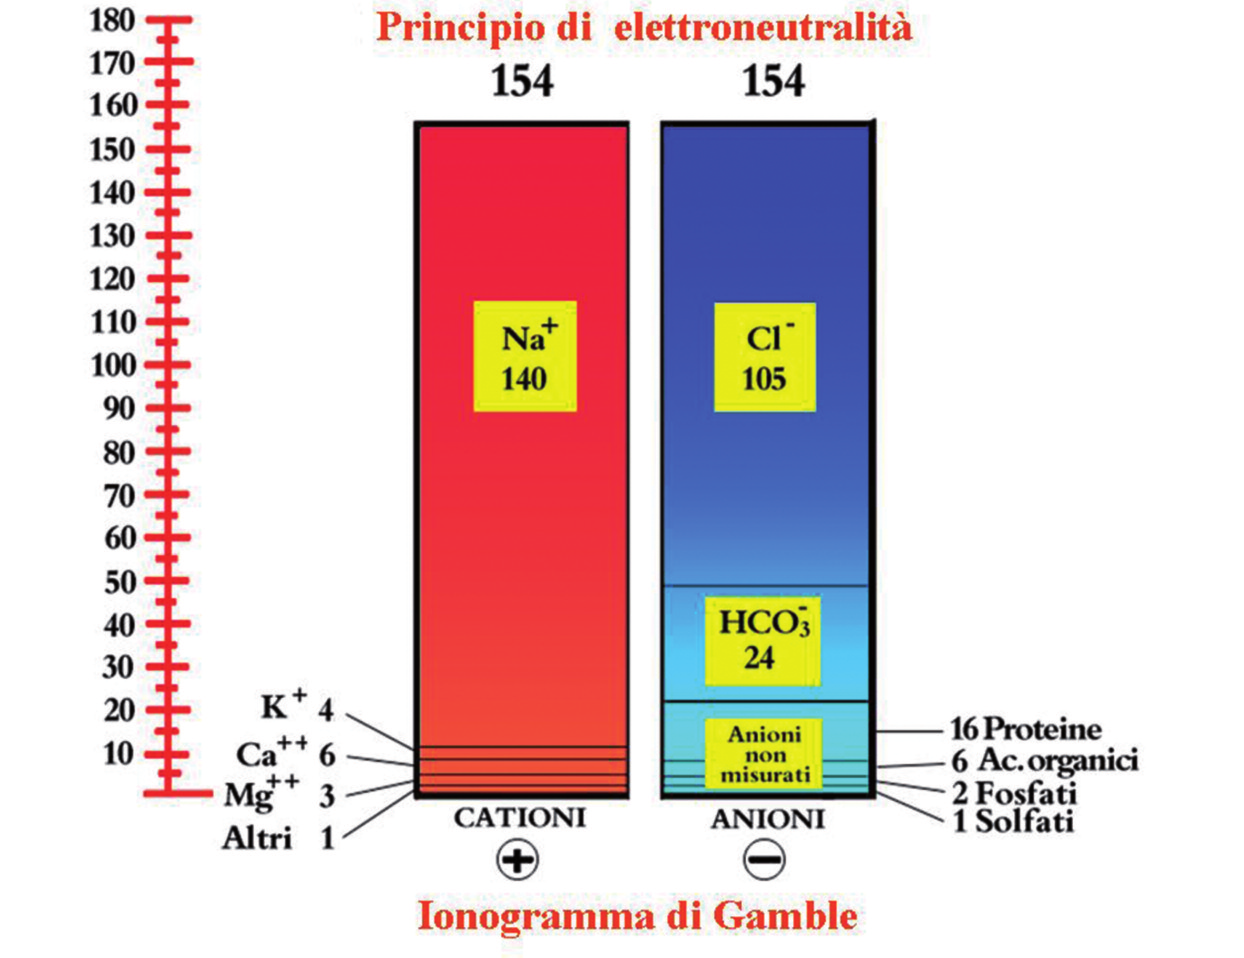 Fig. 19 Le torri gemelle dello ionogramma di Gamble (Il principio di elettroneutralità).